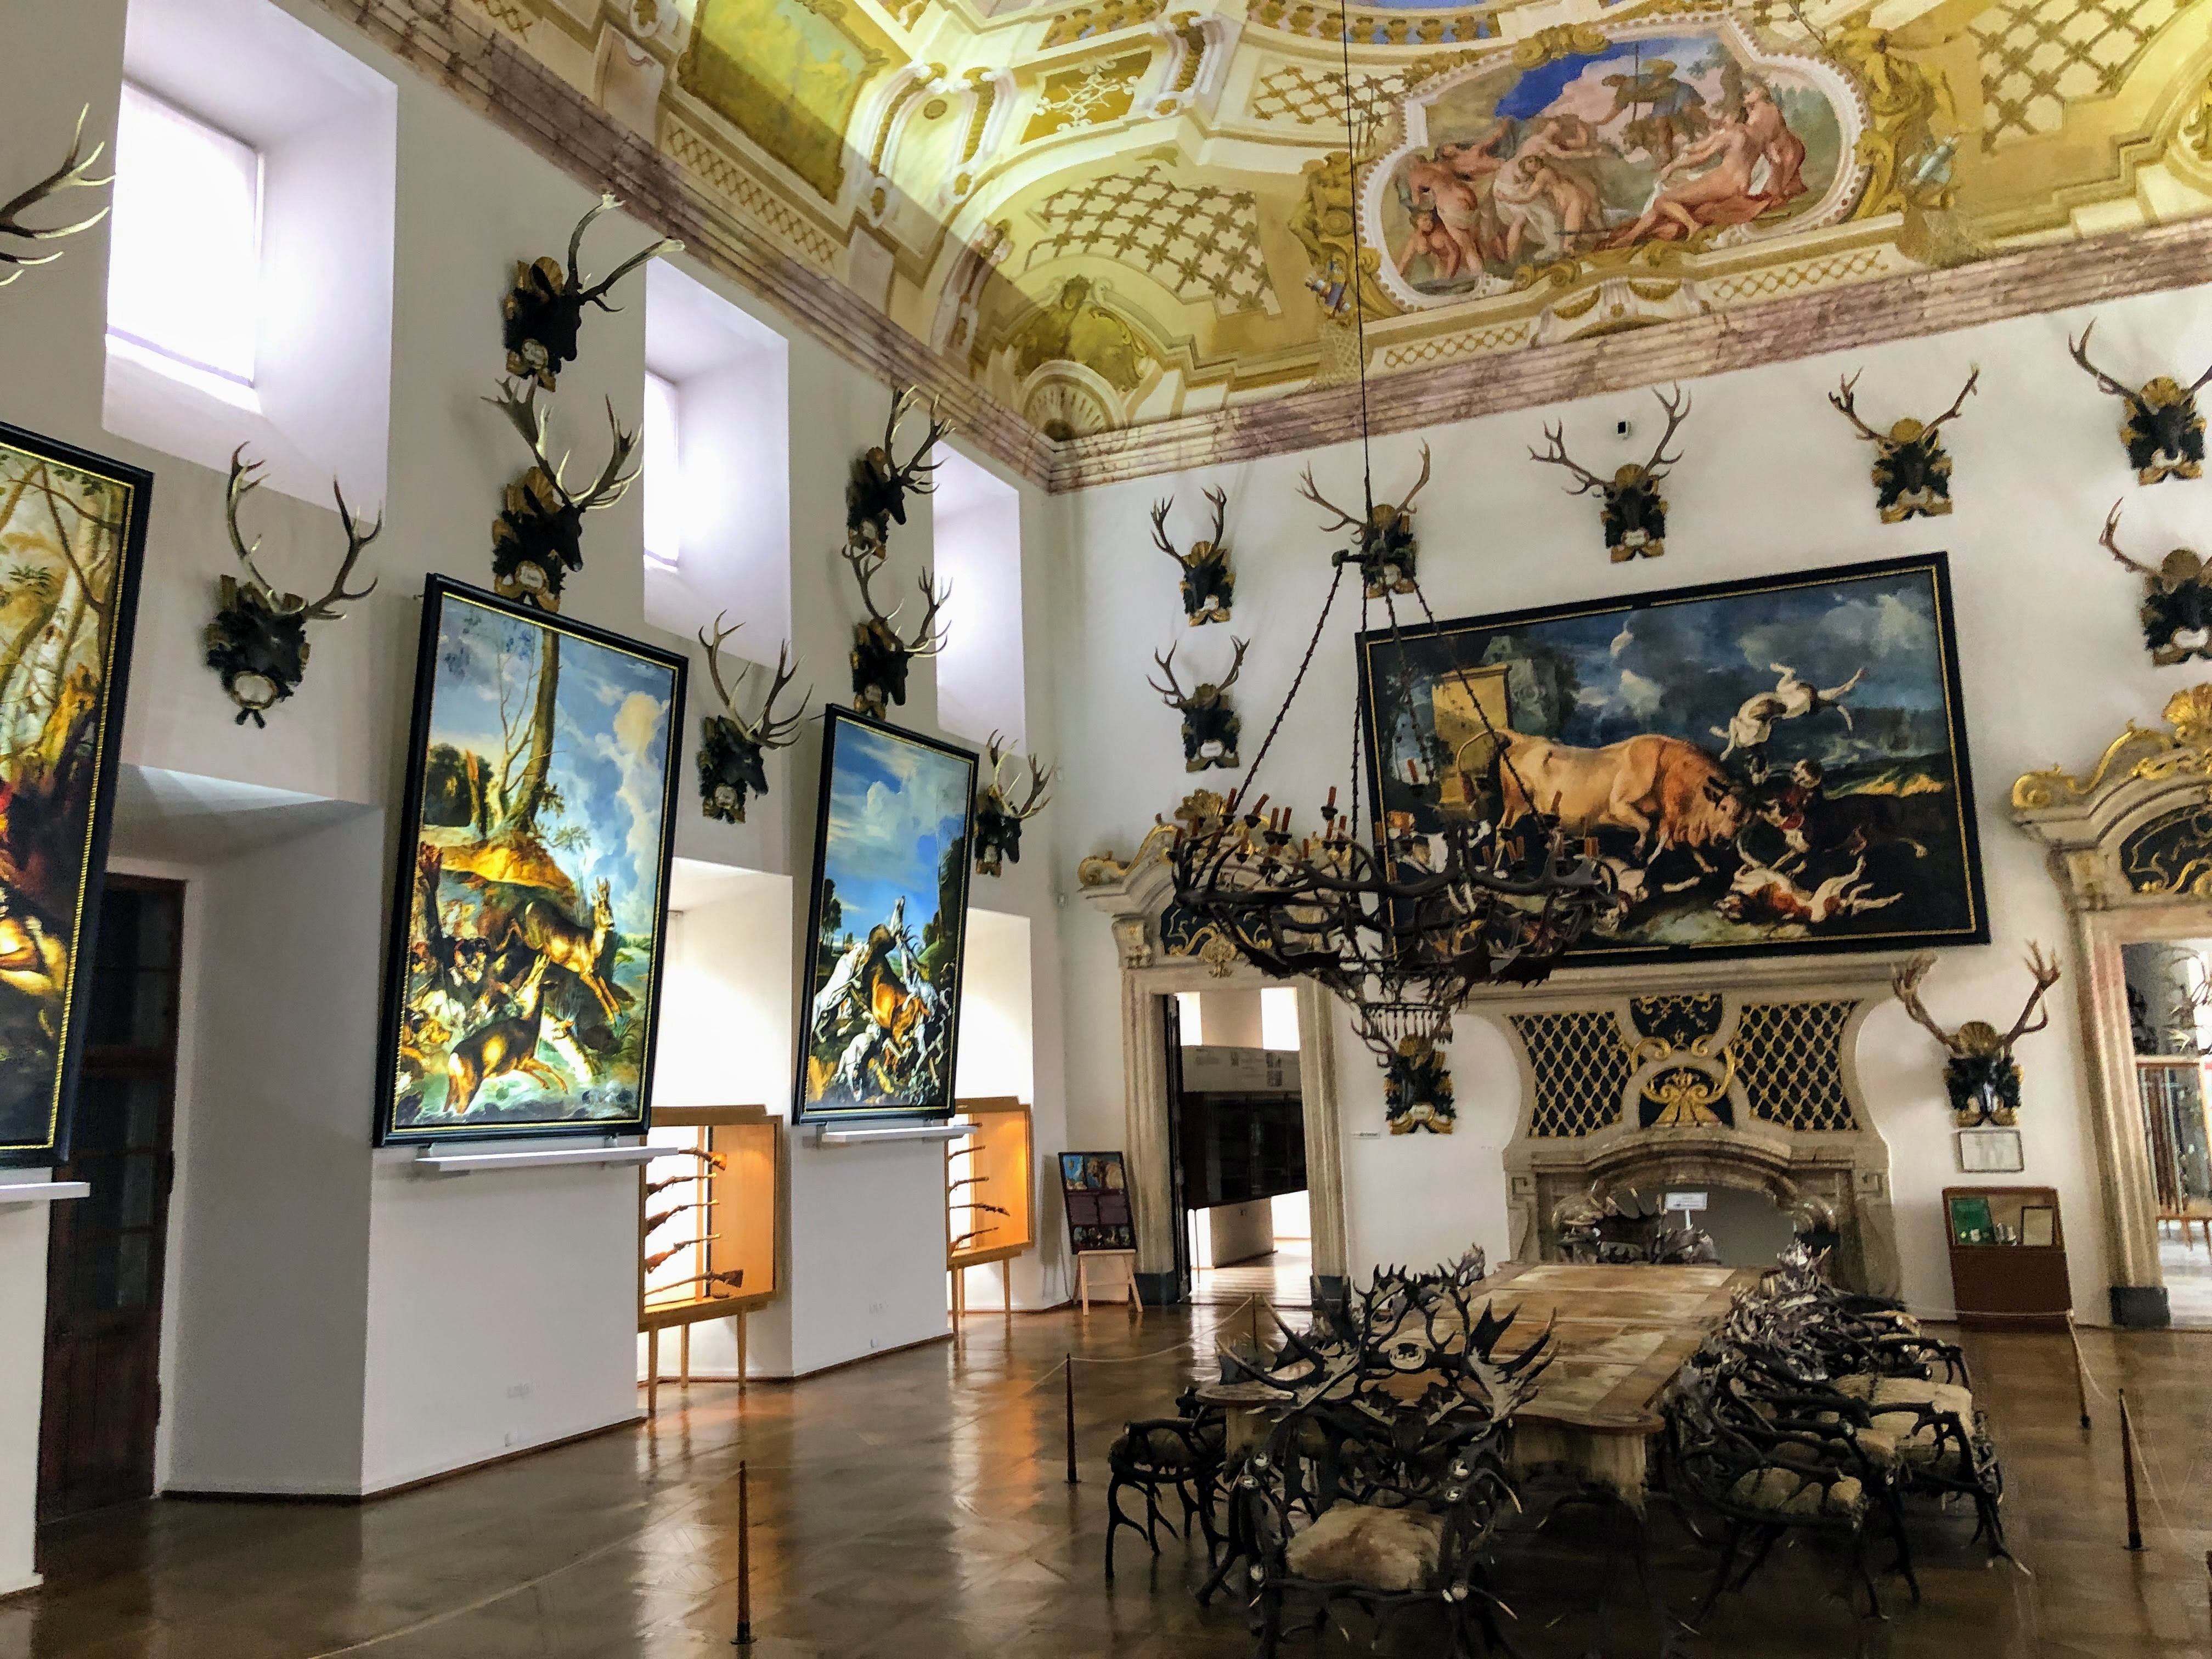 La grande salle d’apparat avec ses fresques monumentales au plafond et son mobilier finement ciselé /crédit photo JDL